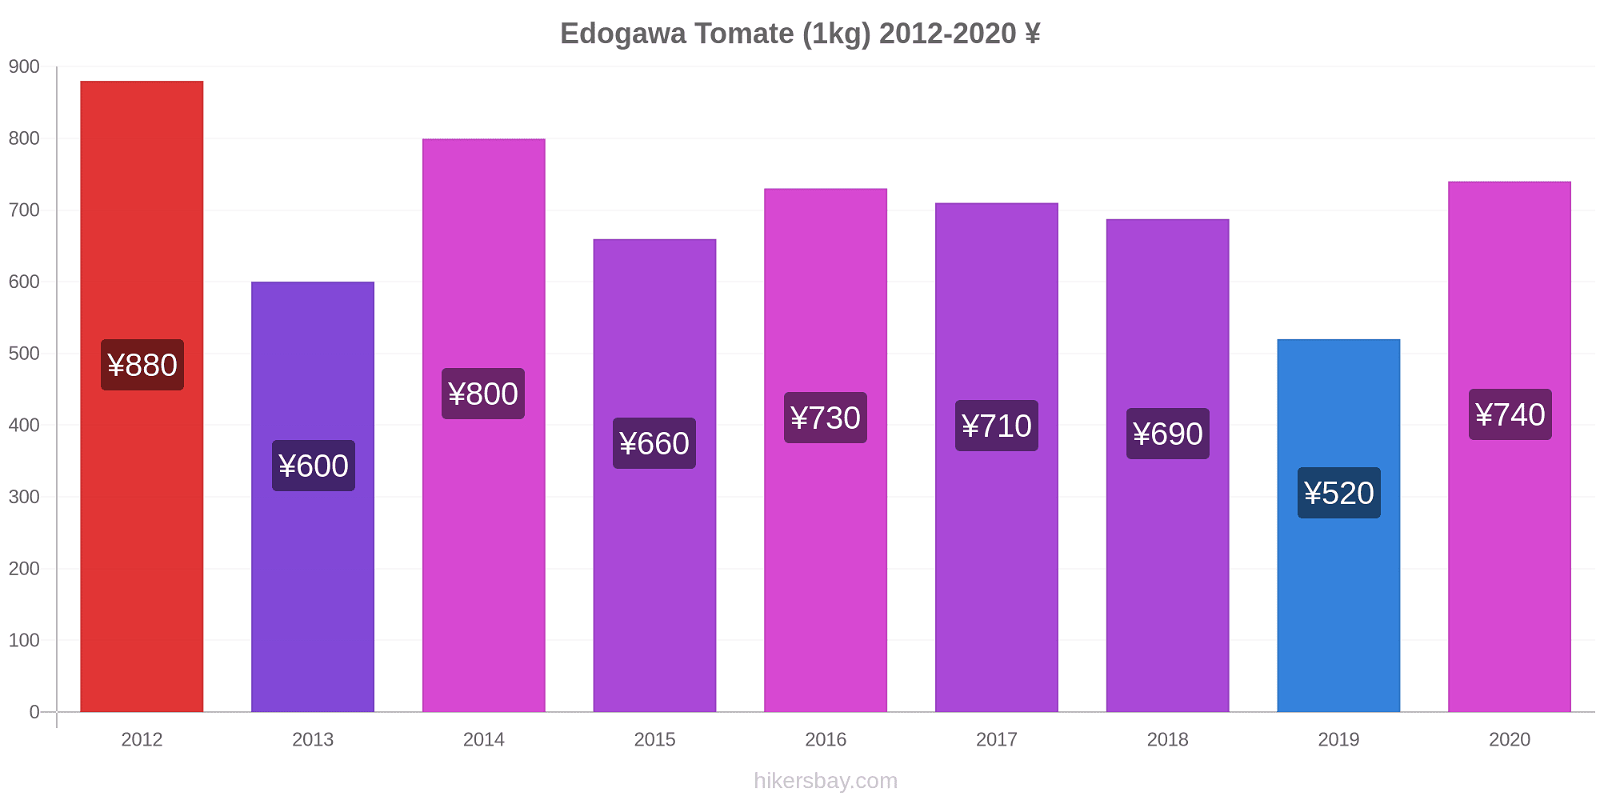 Edogawa Preisänderungen Tomaten (1kg) hikersbay.com